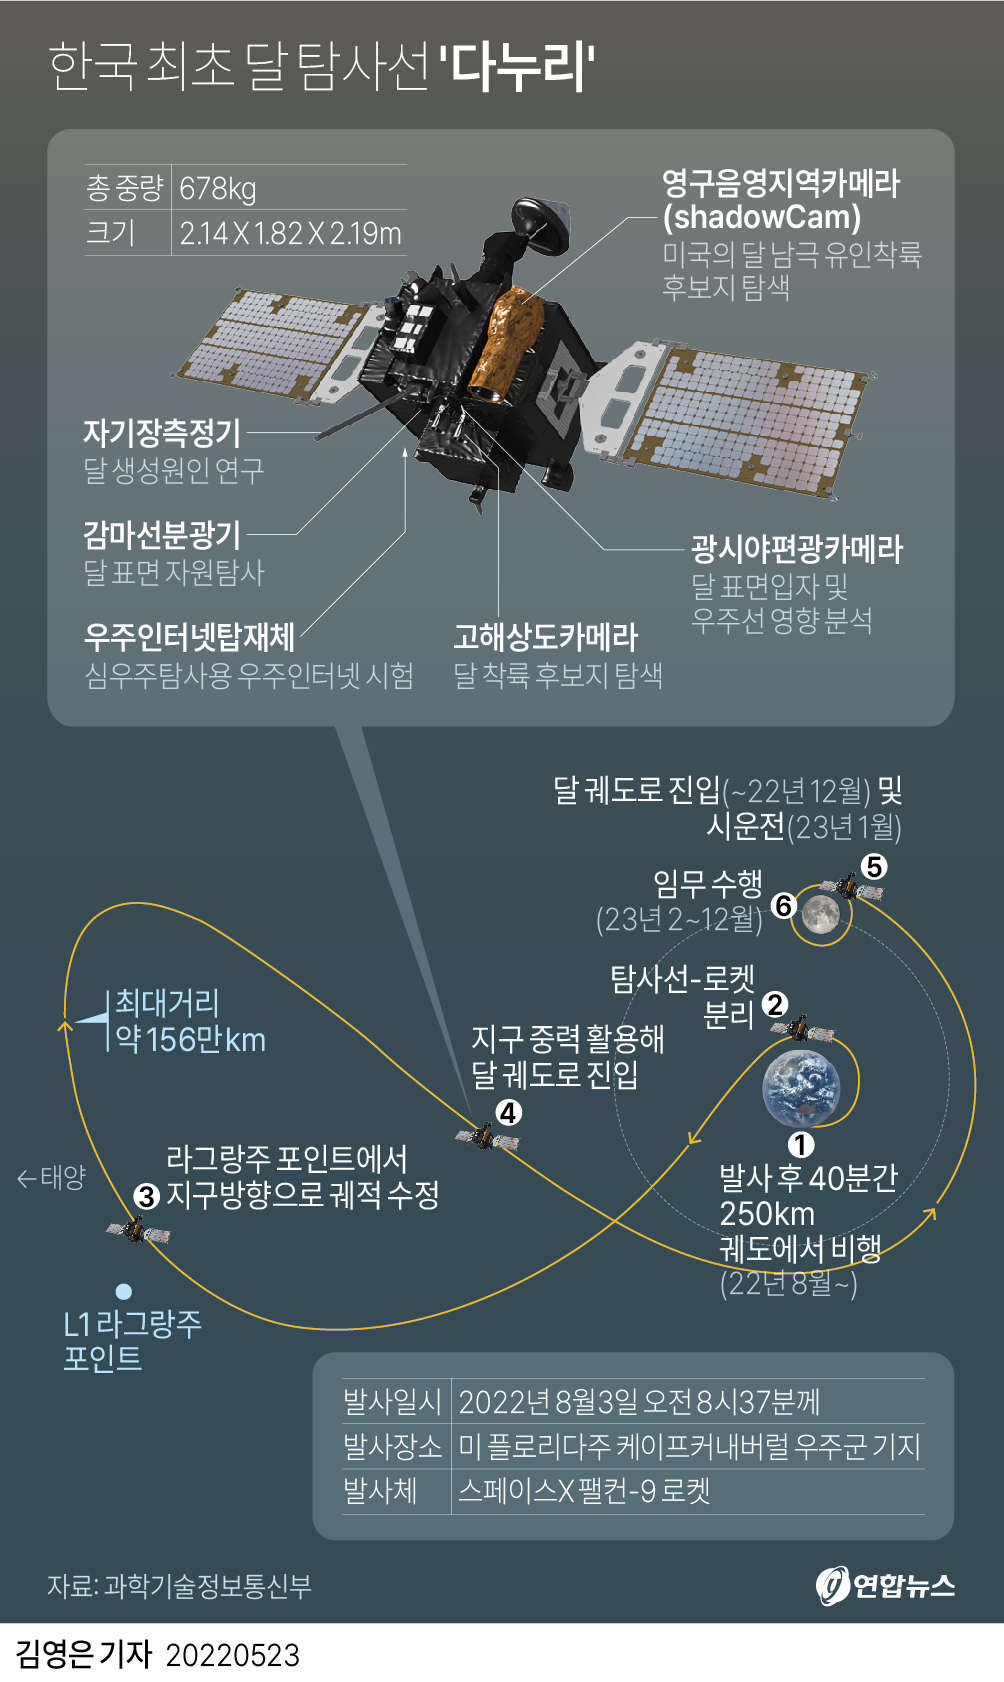 [그래픽] 한국 최초 달 탐사선 '다누리'